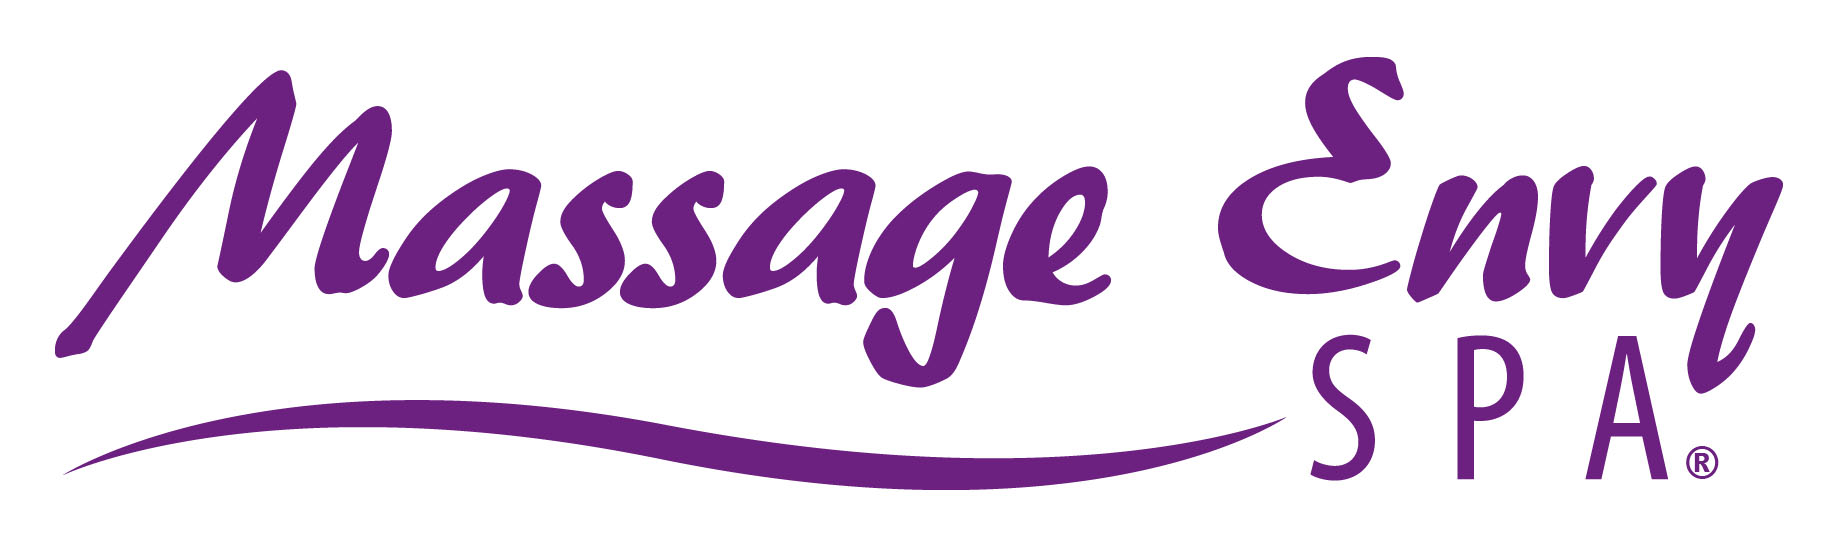 Massage Envy to Fund Massage Scholarships, MASSAGE Magazine